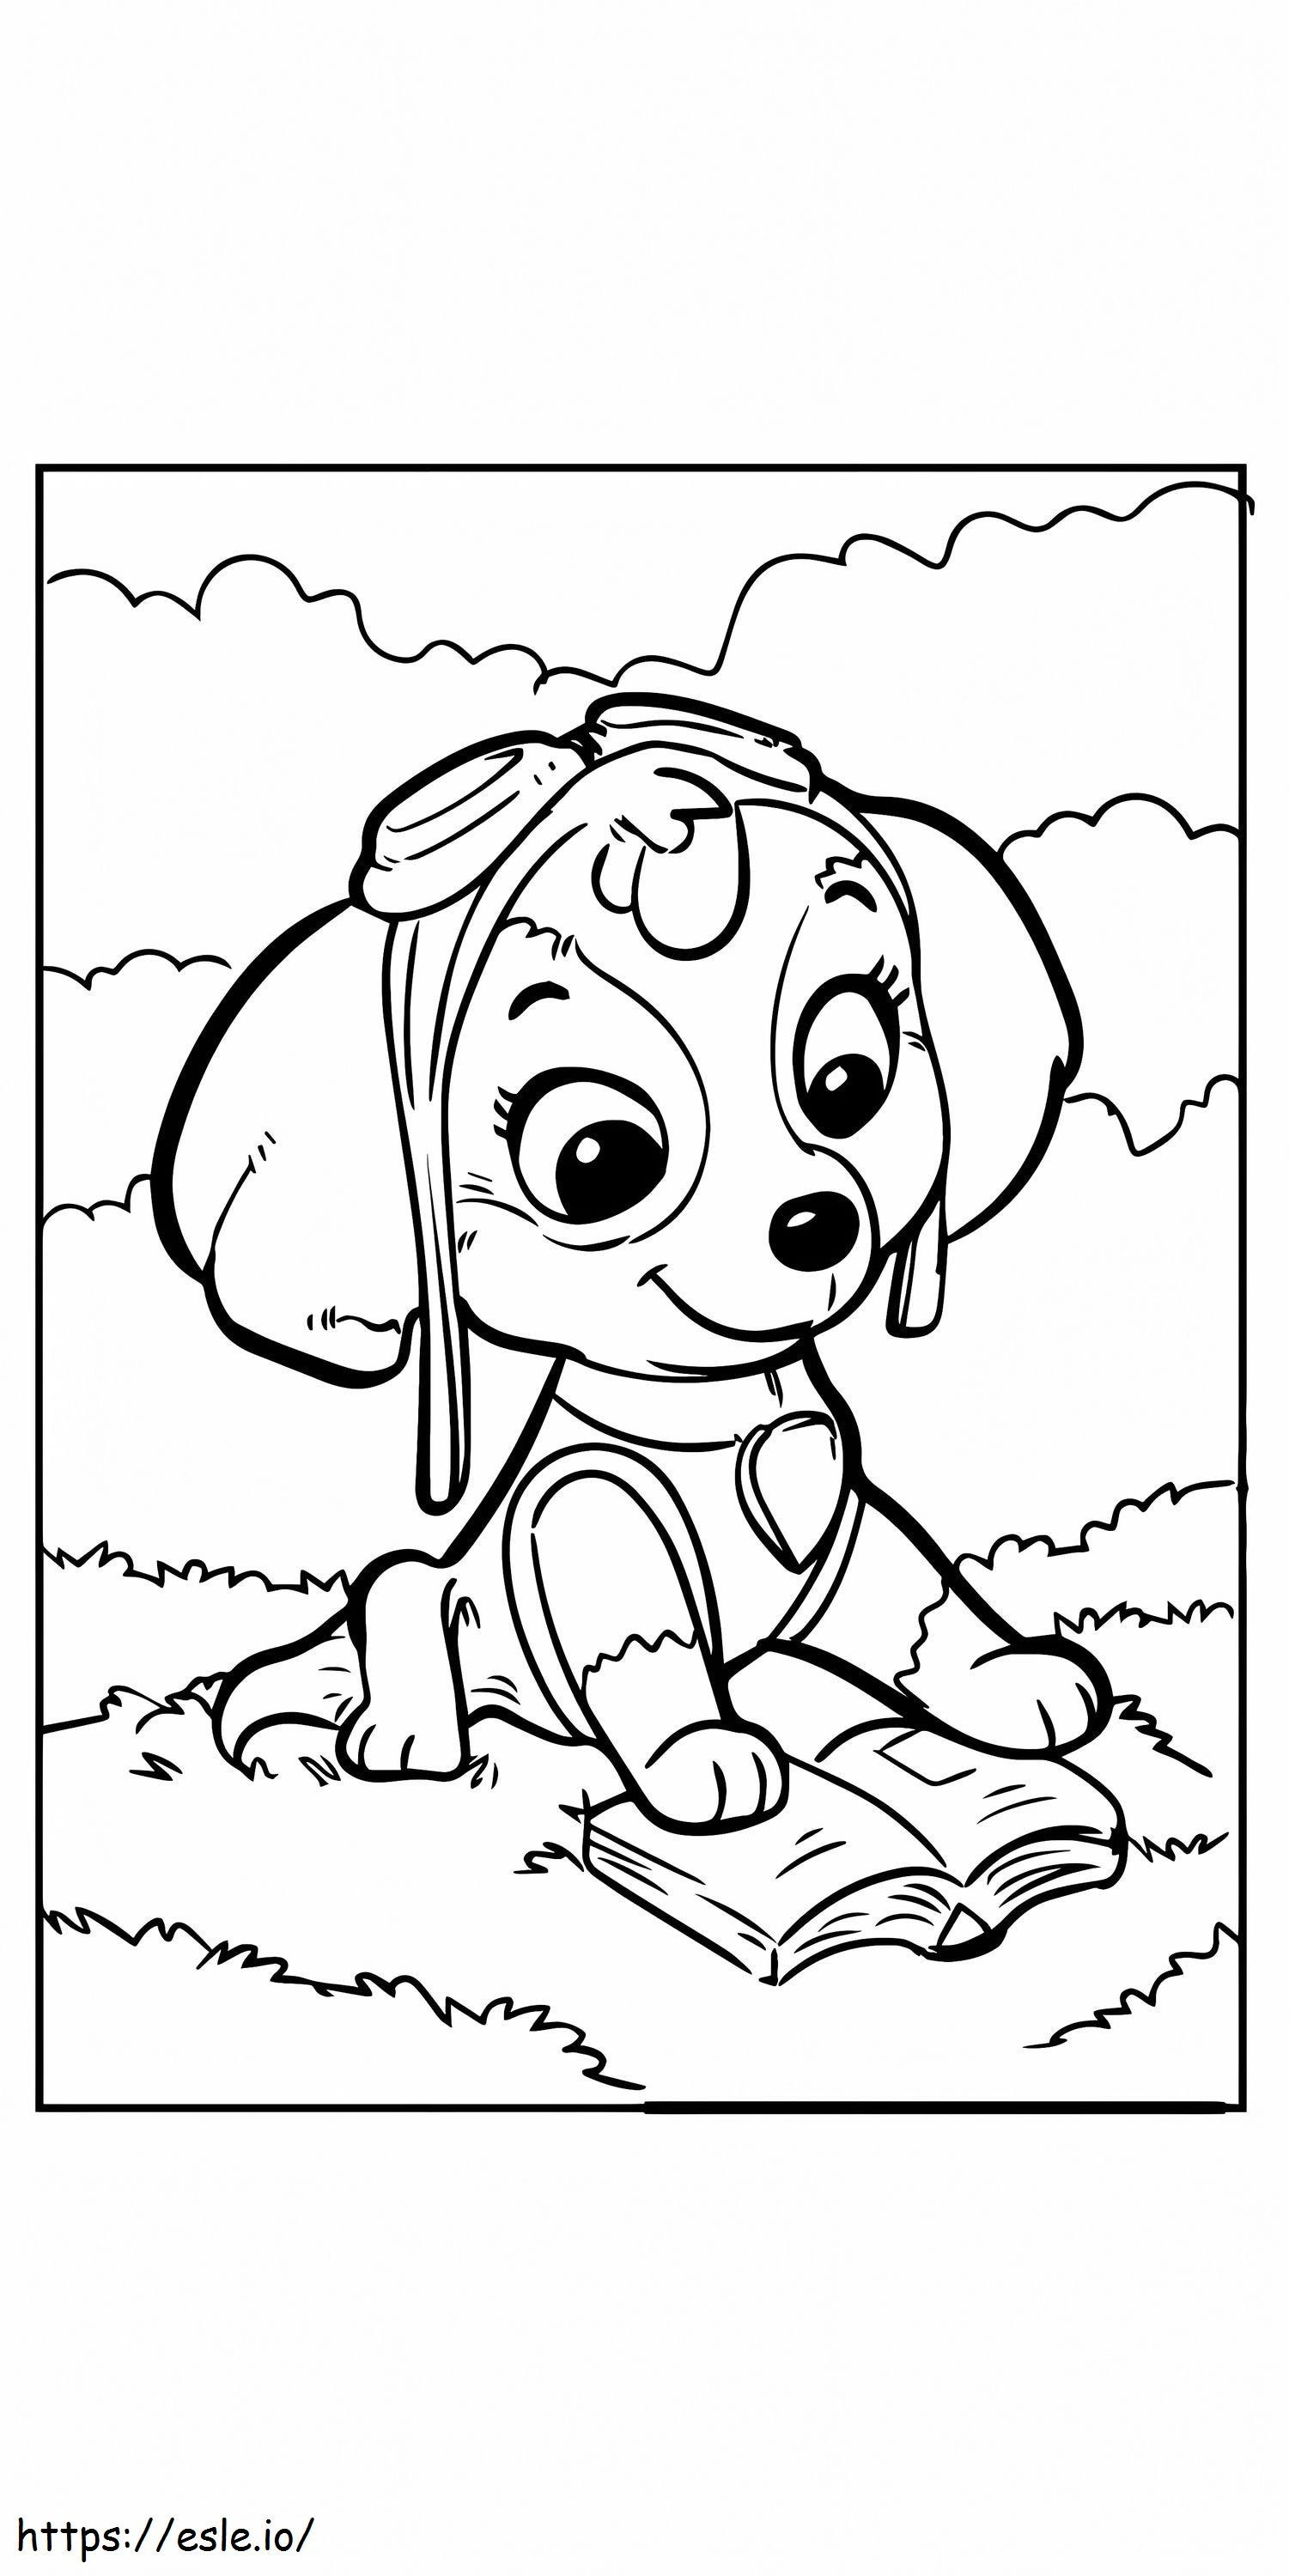 Cute Paw Patrol Skye coloring page